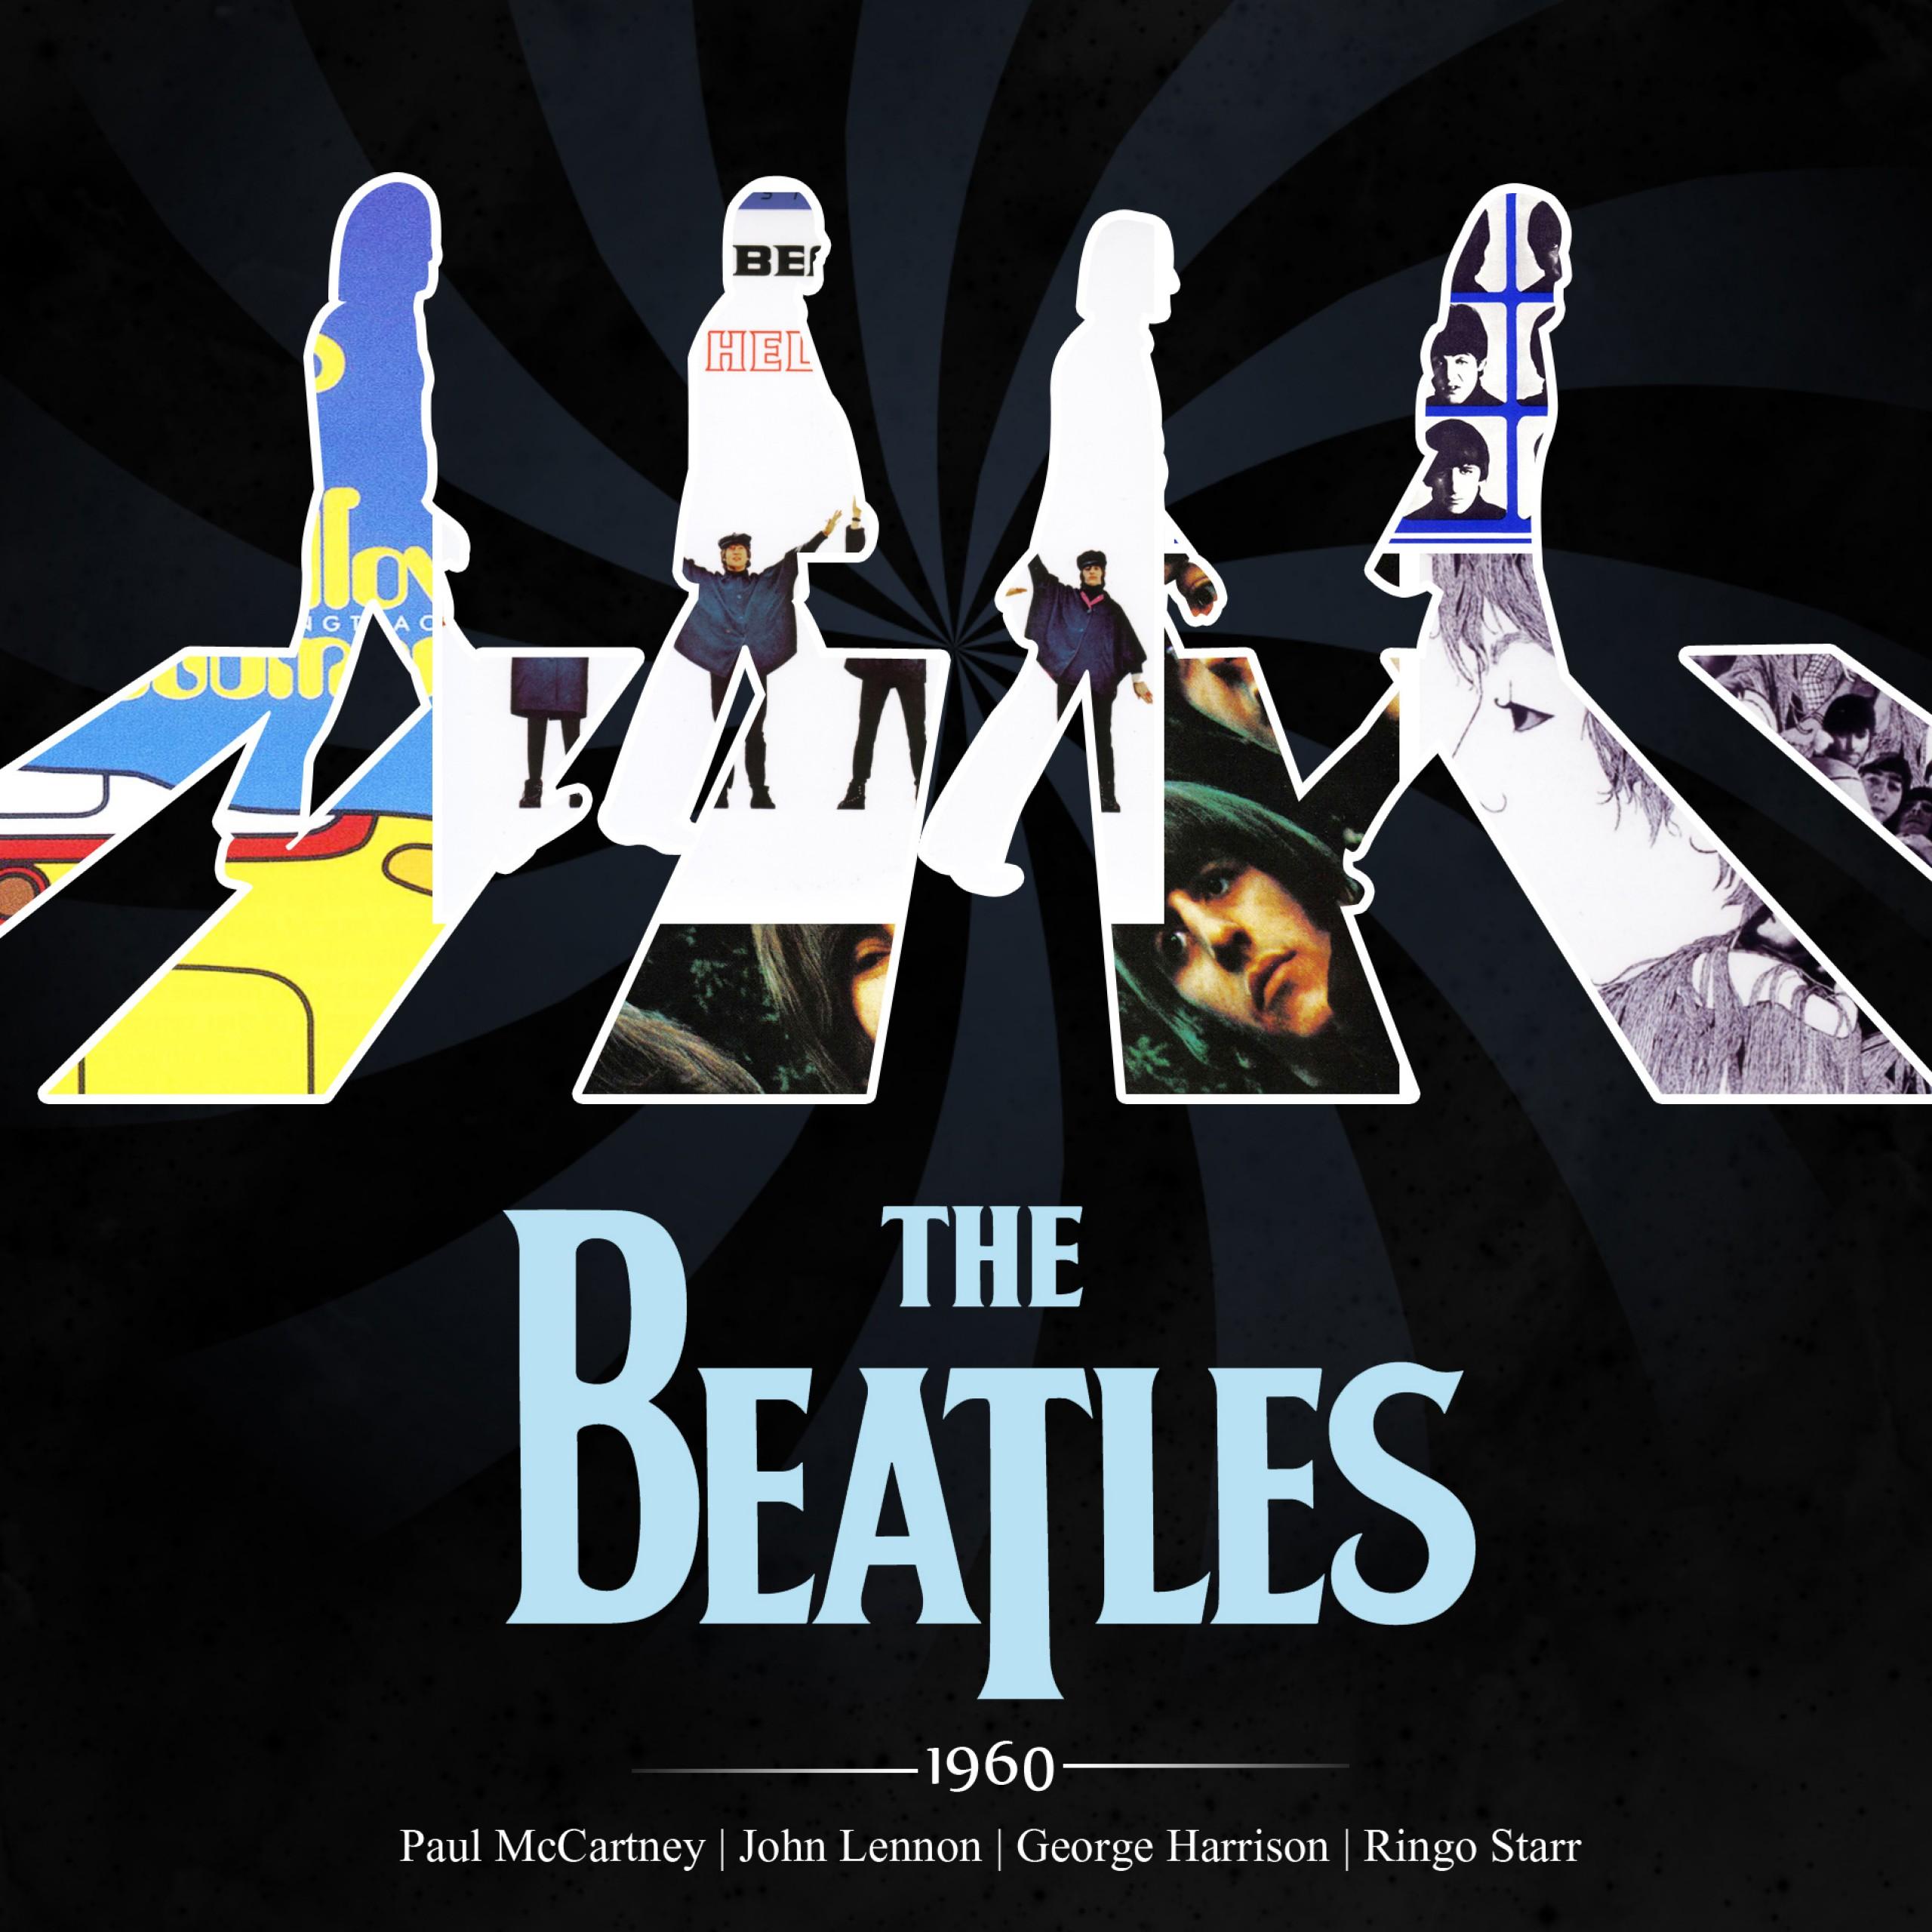 Wallpaper The Beatles, John Lennon, Paul McCartney, Ringo Starr